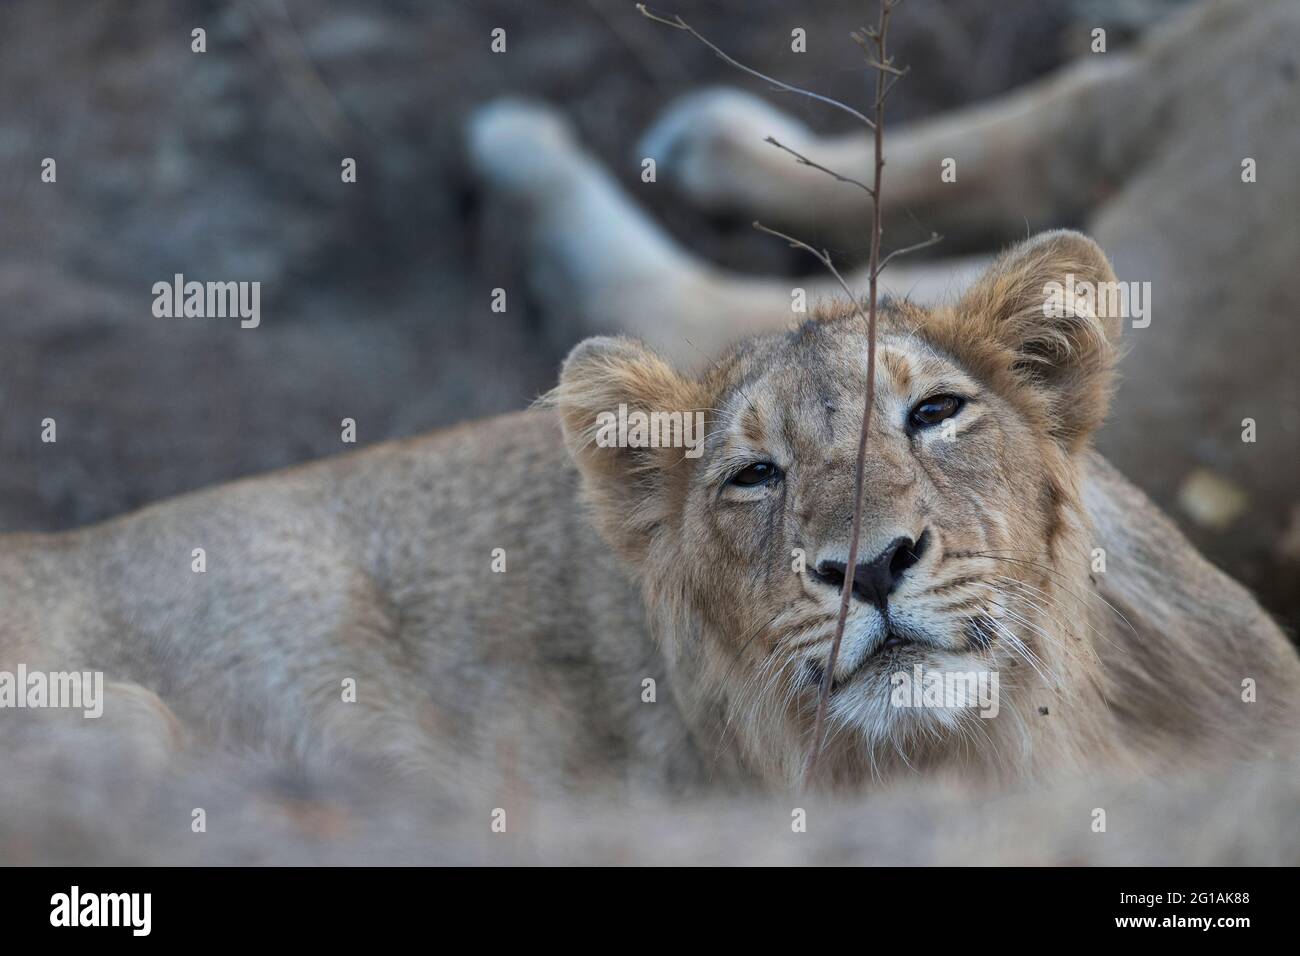 L'image du lion asiatique mâle Cub( Panthera leo persica) a été prise au parc national GIR, Gujarat, Inde, Asie Banque D'Images